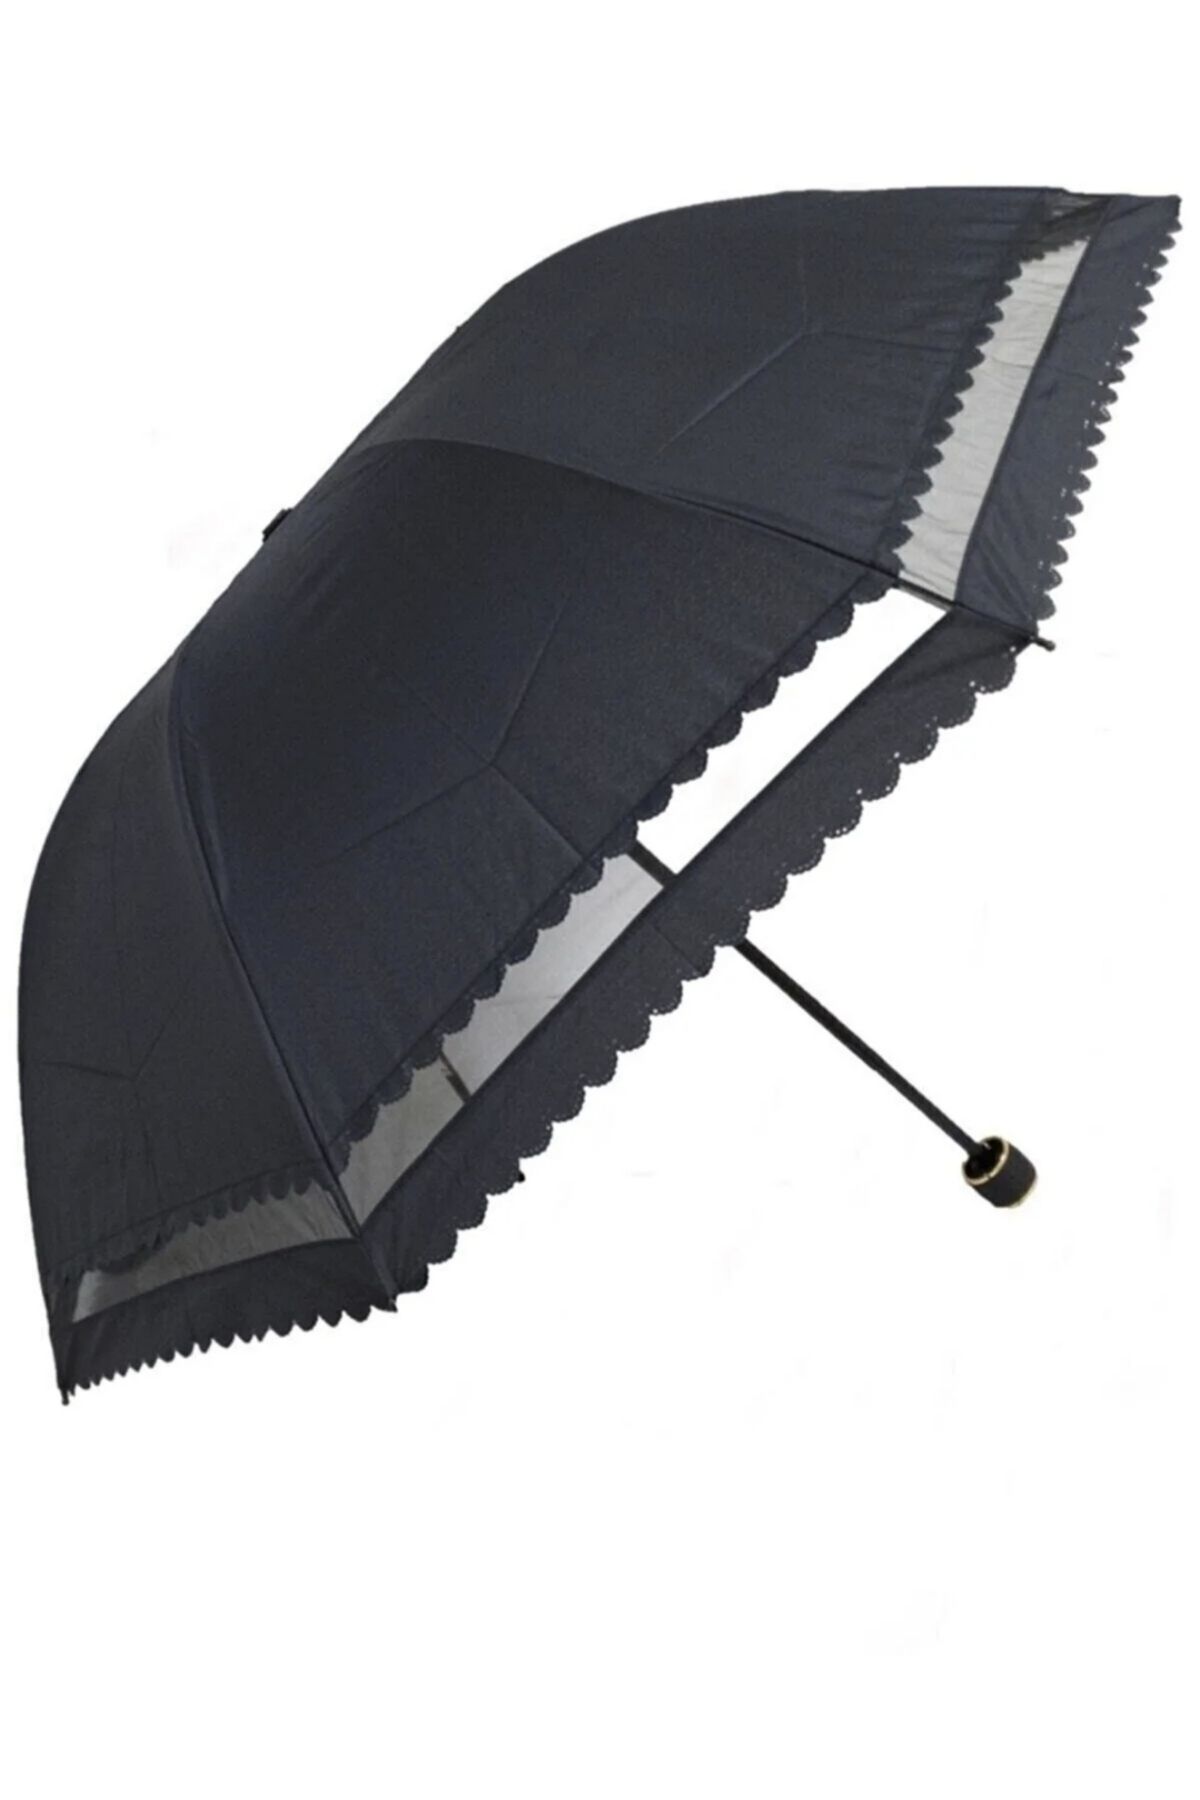 AVİPOLES Şemsiye Dantelli Şemsiye Yarasa Tip Katlamalı 8 Tel Rüzgarda Kırılmaz Lüx Şemsiyesi